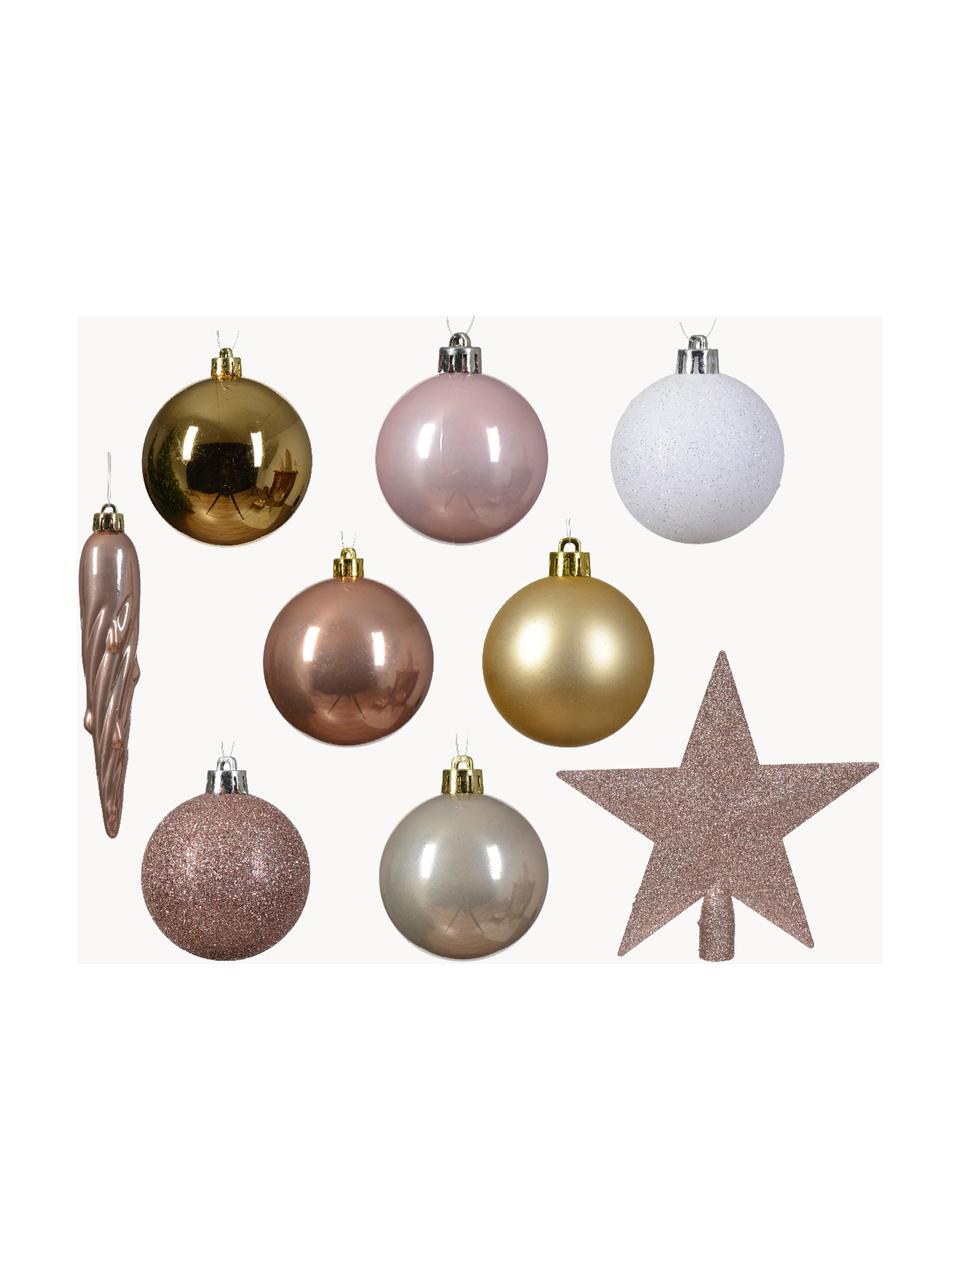 Sada ozdob na vánoční stromeček Starstruck, 33 dílů, Umělá hmota, Bílá, zlatá, měděná, růžová, Sada s různými velikostmi